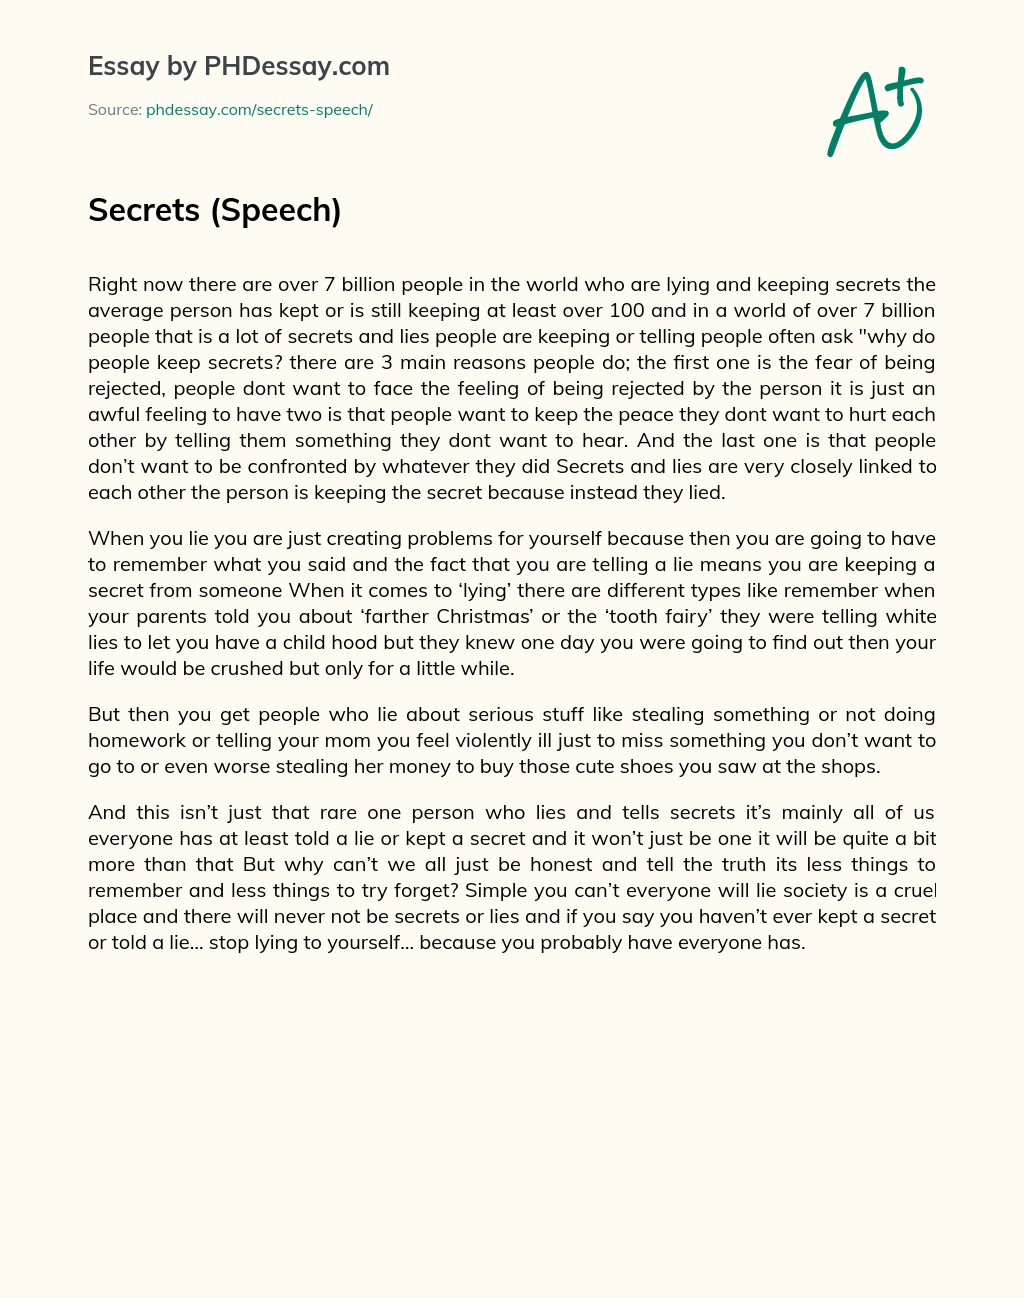 Secrets (Speech) essay